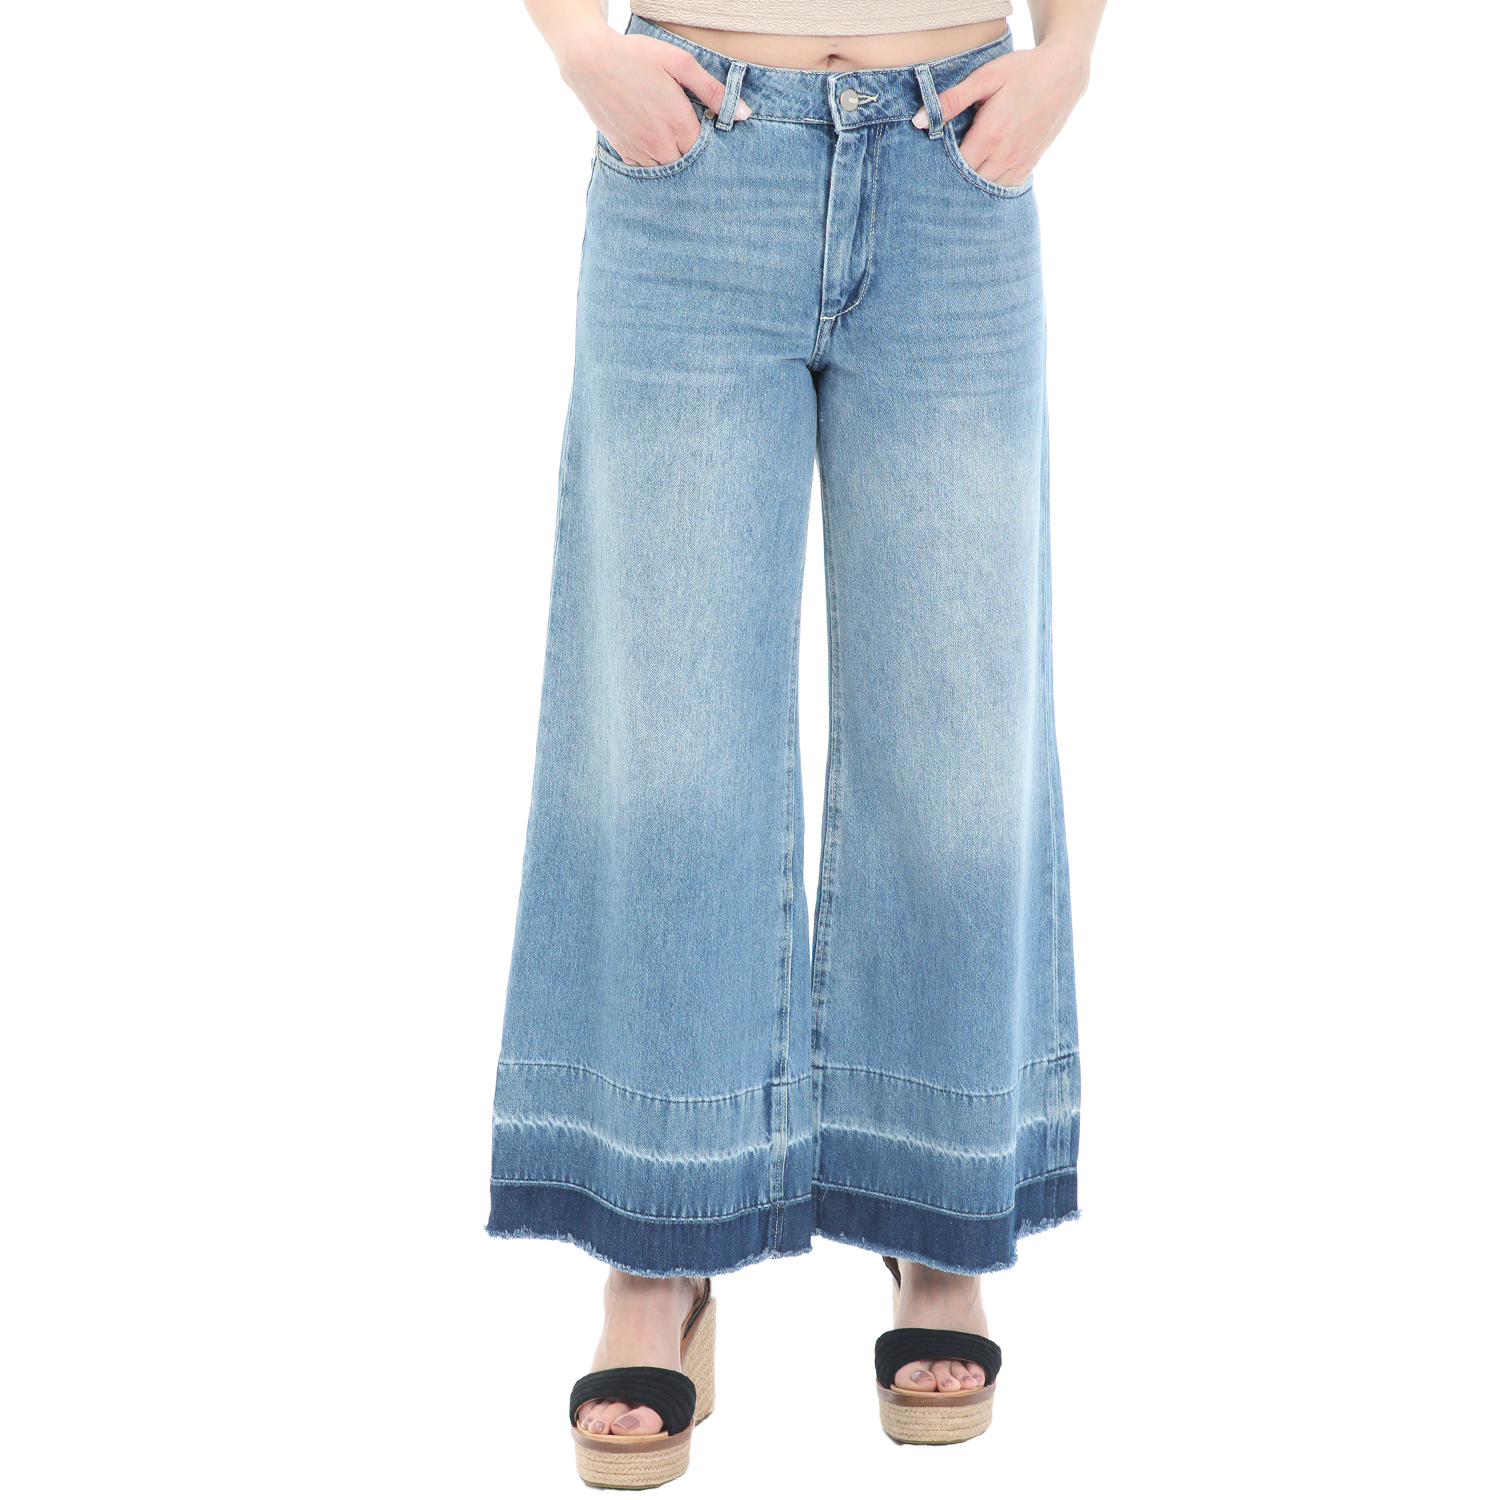 Γυναικεία/Ρούχα/Τζίν/Καμπάνες REIKO - Γυναικείο jean παντελόνι REIKO PEDRO μπλε